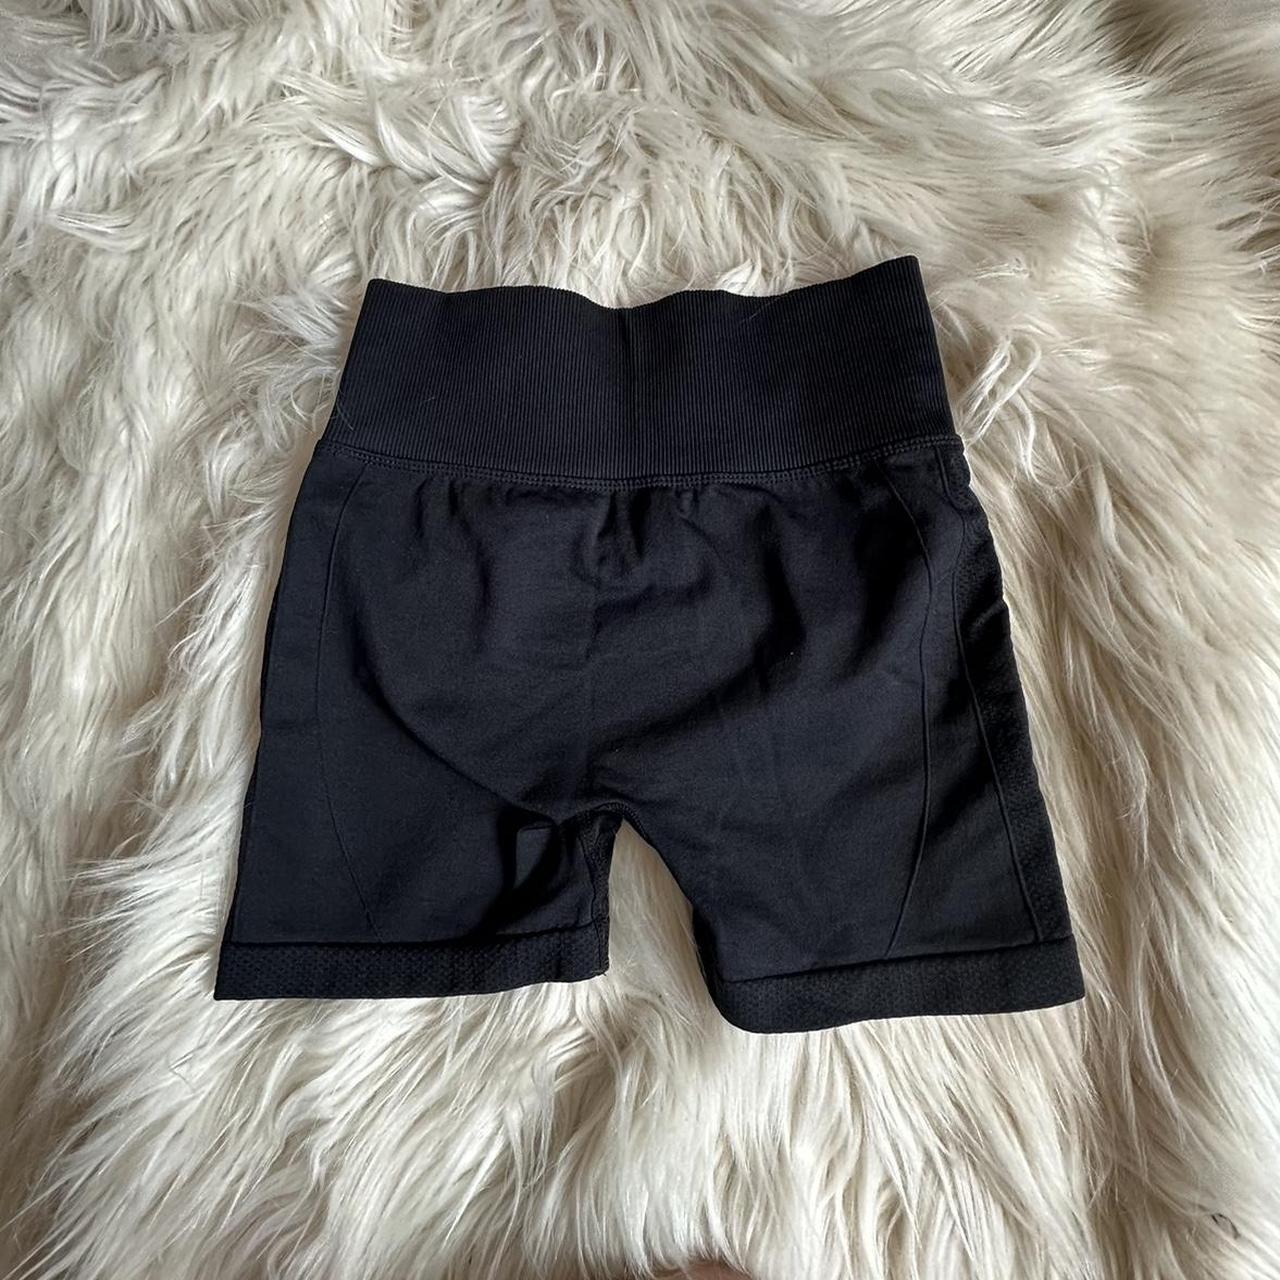 xs black shorts with flattering butt scrunch -... - Depop